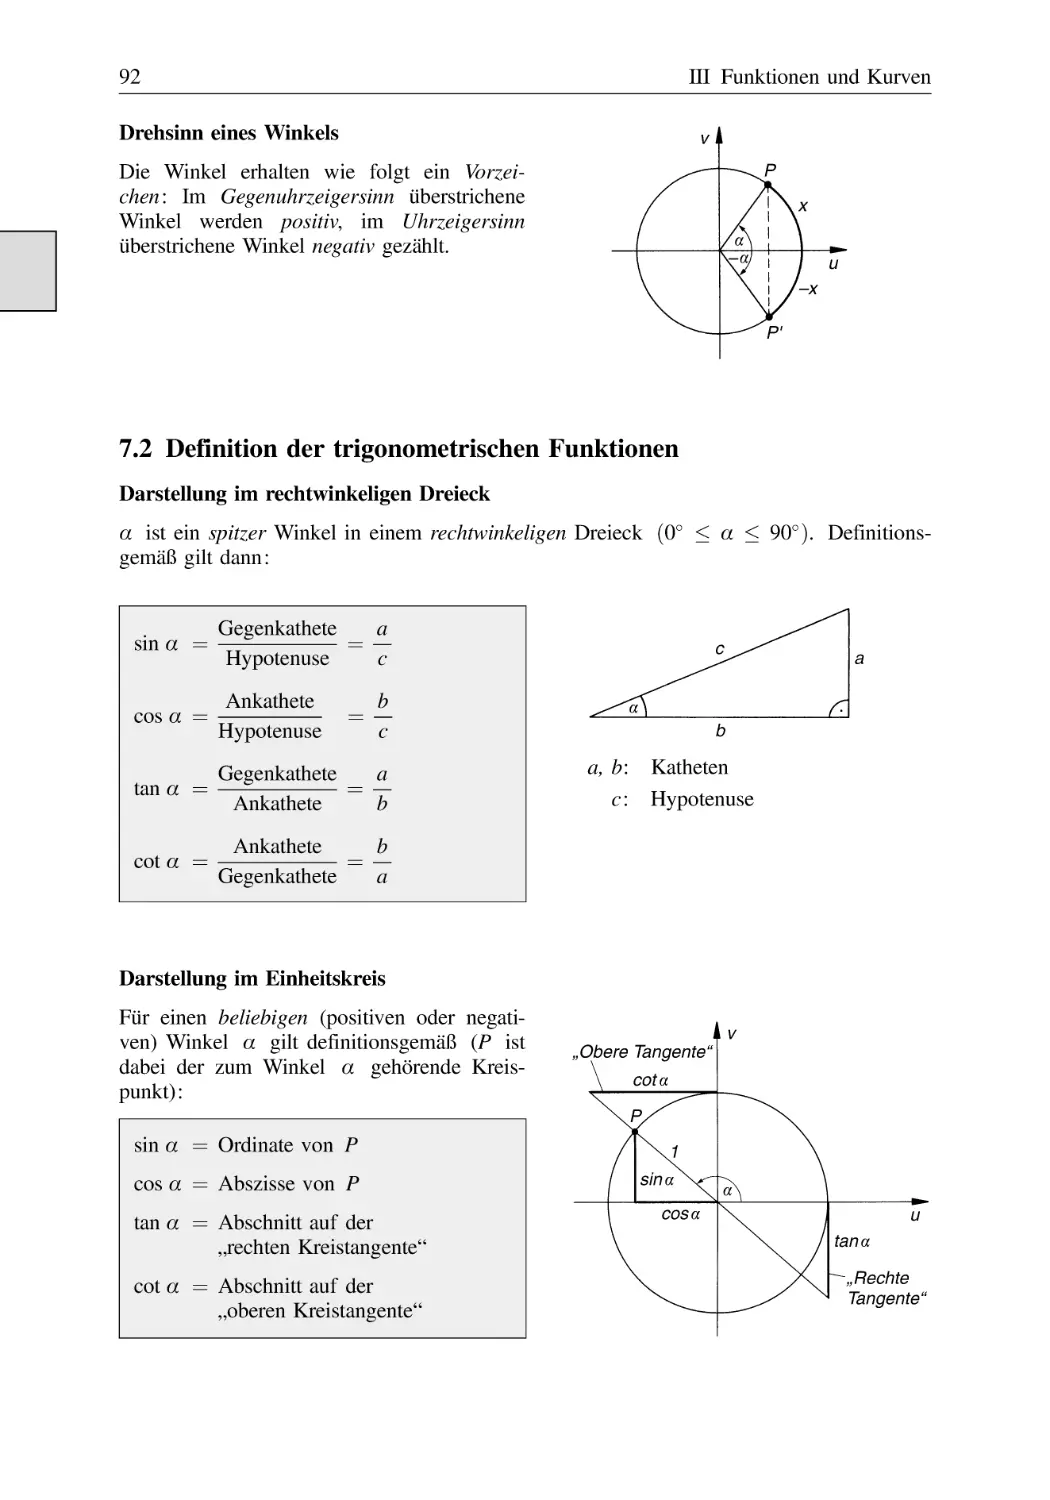 7.2 Definition der trigonometrischen Funktionen